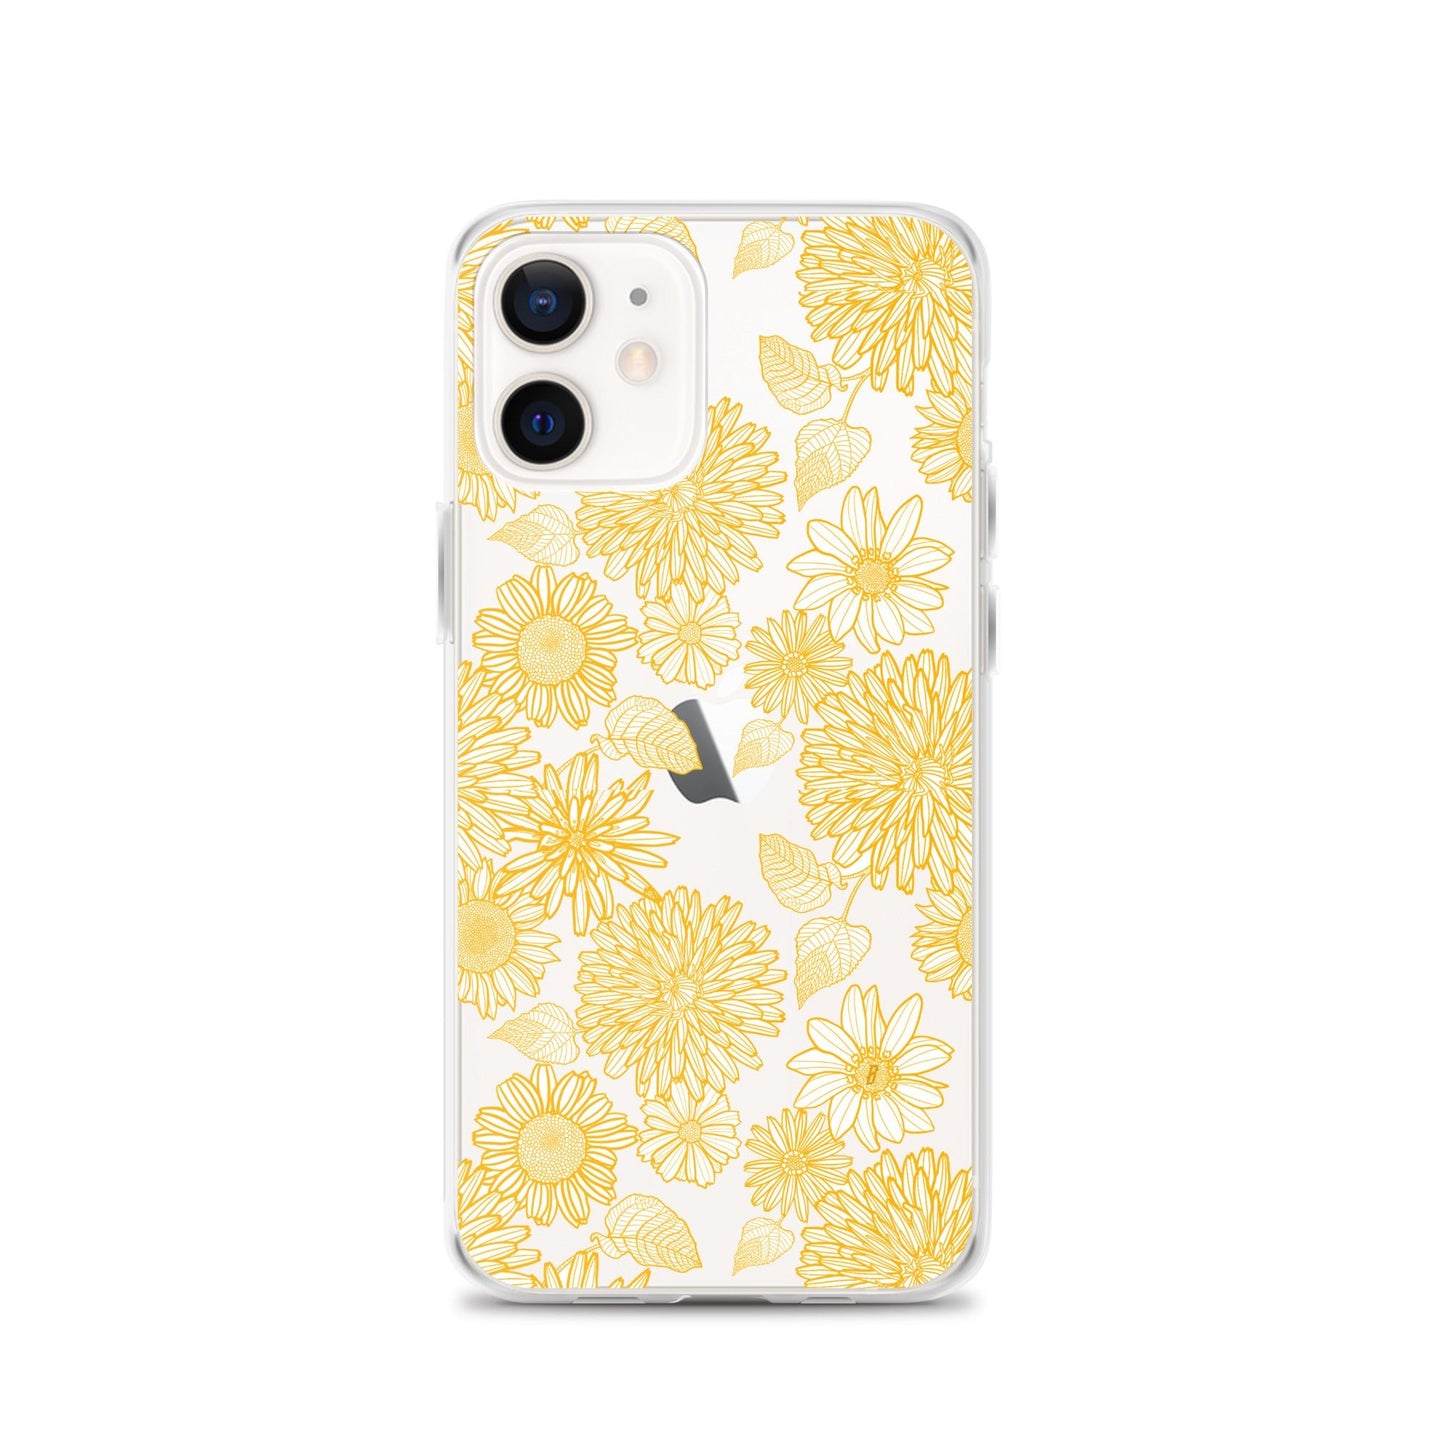 Sunflower iPhone Case - blunt cases